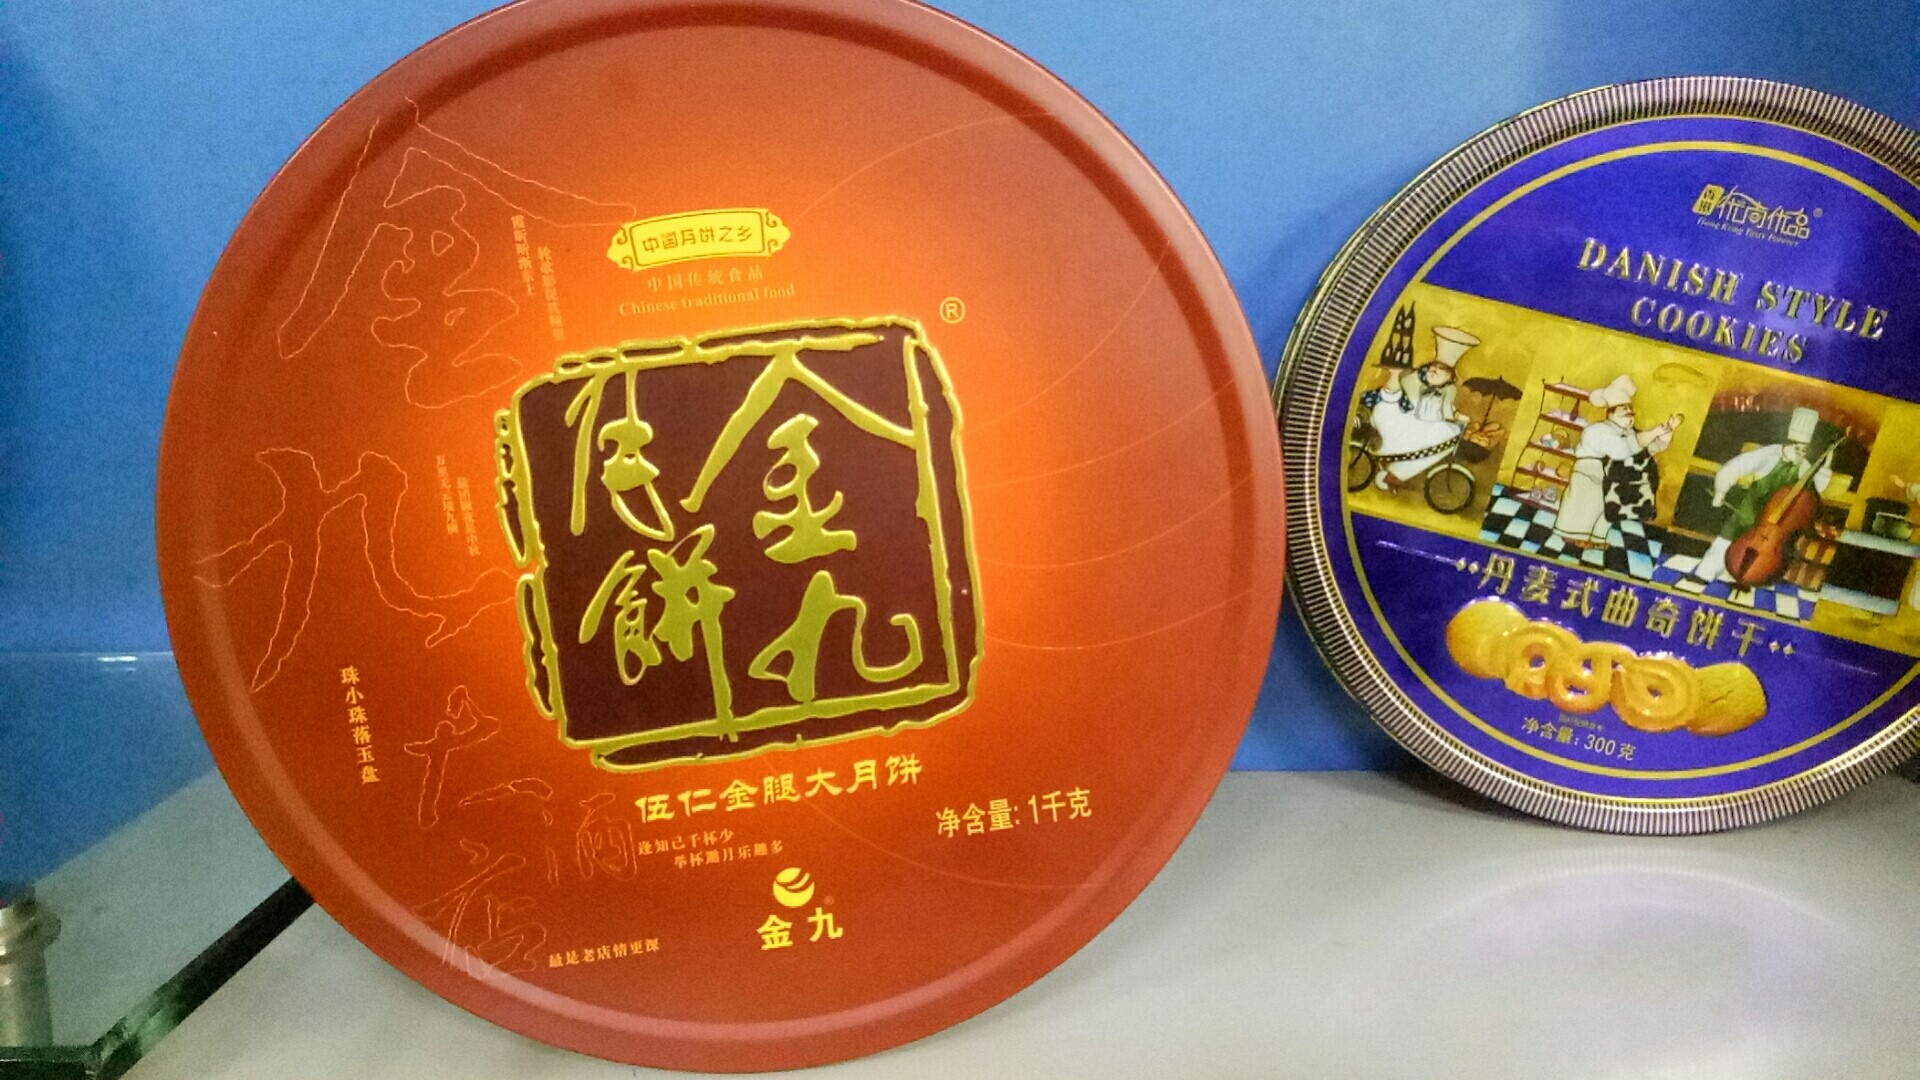 广东兴发印铁制罐有限公司将亮相CIPPME上海国际包装展